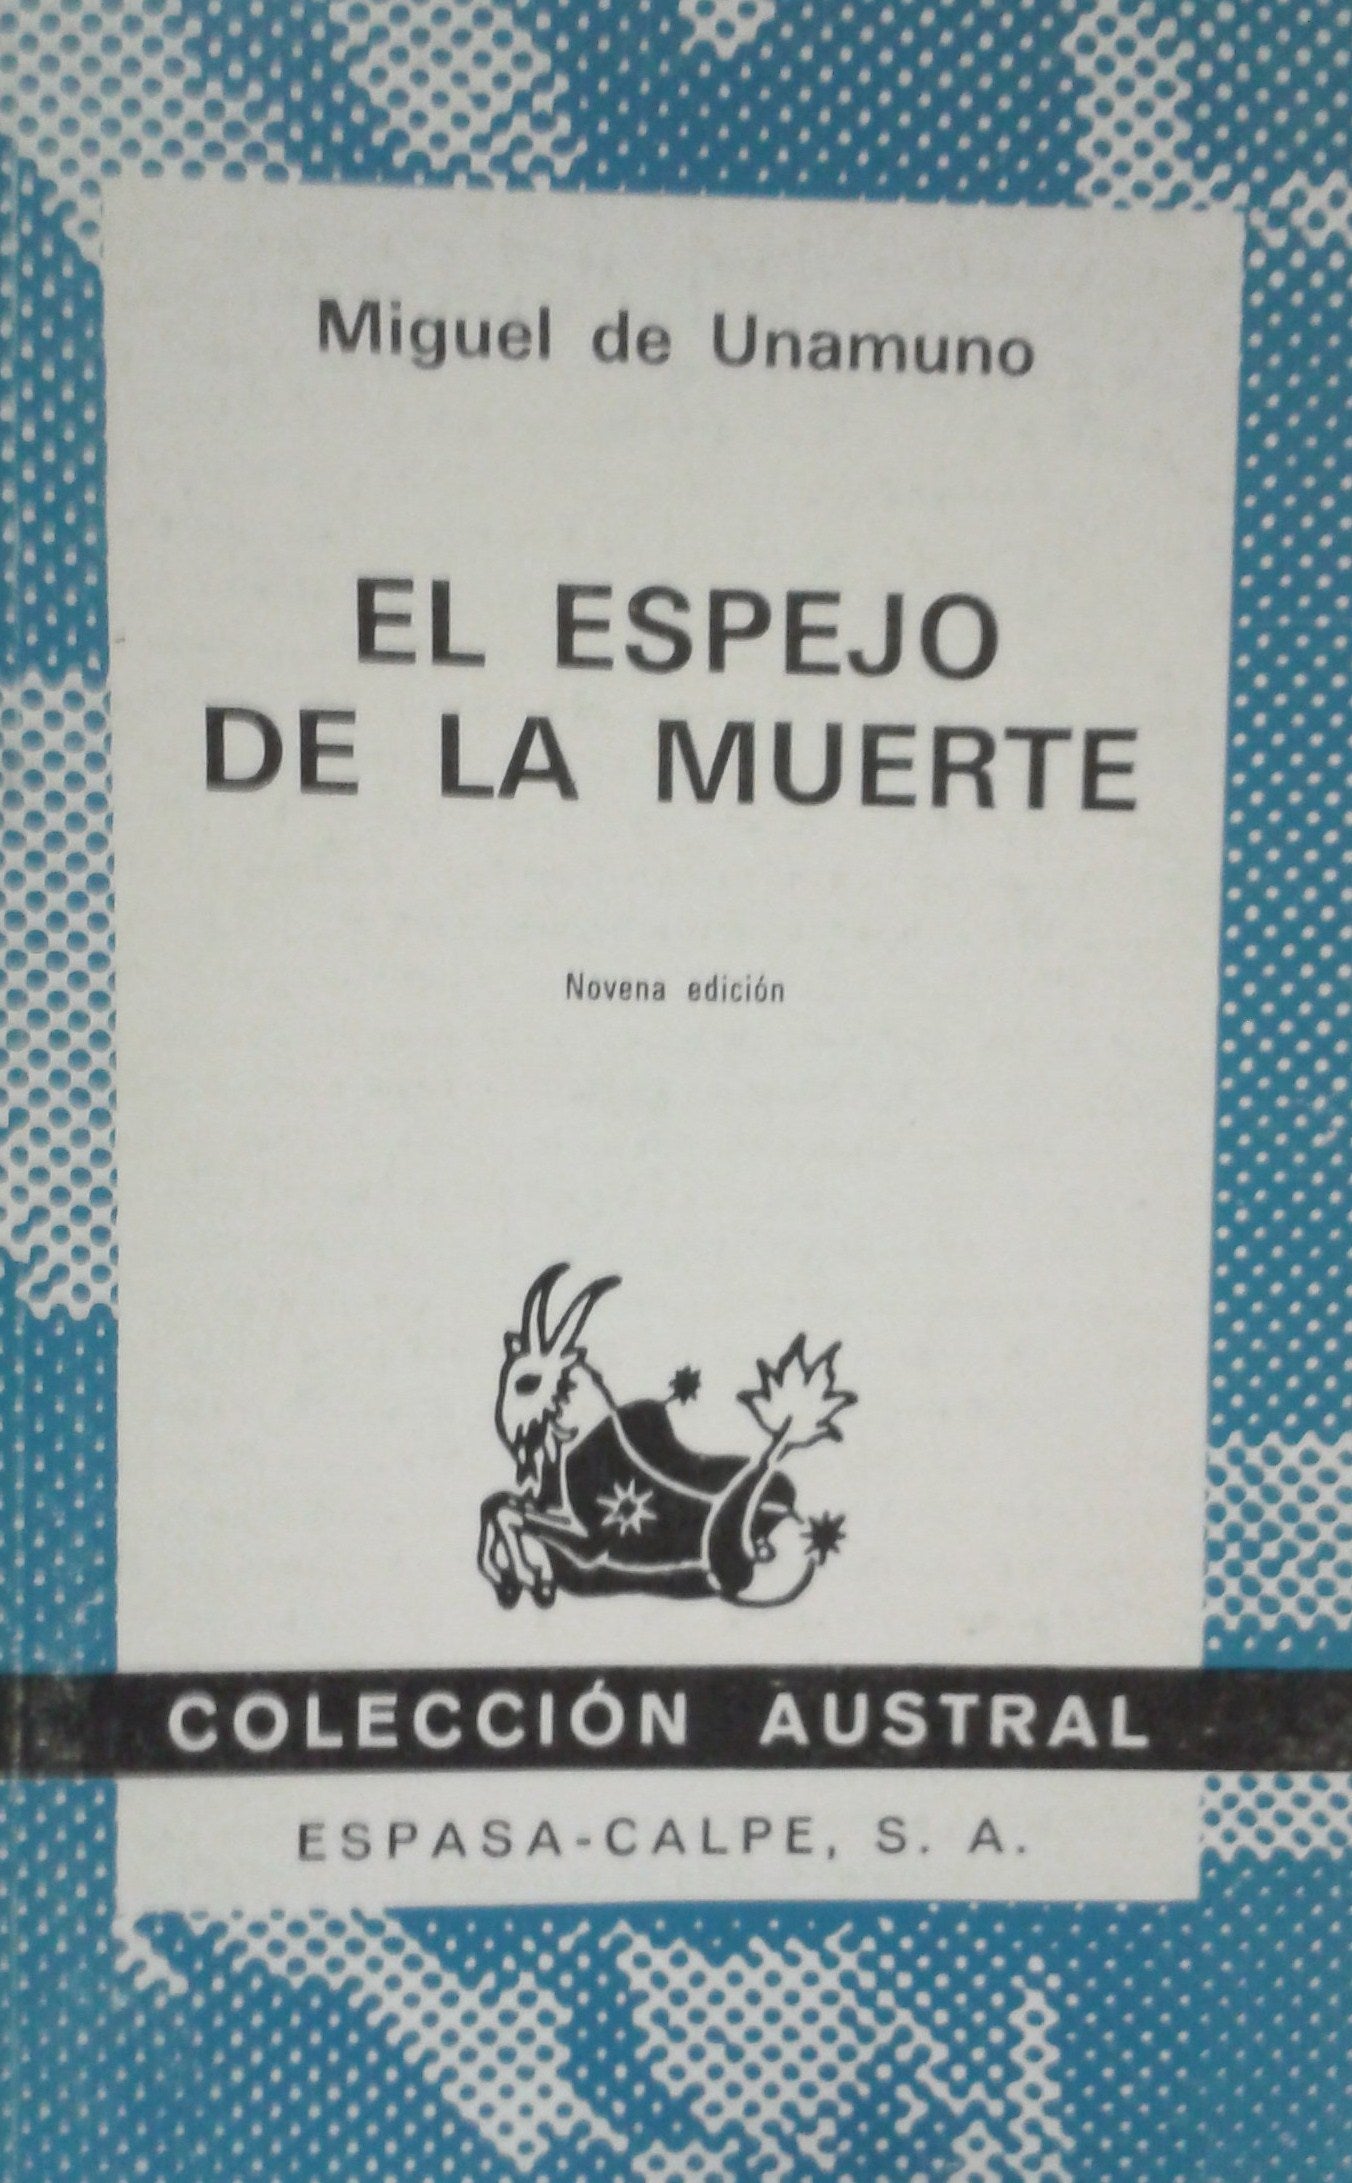 Livre ISBN 8423901998 Austral : El Espejo De La Muerte (Miguel De Unamuno)